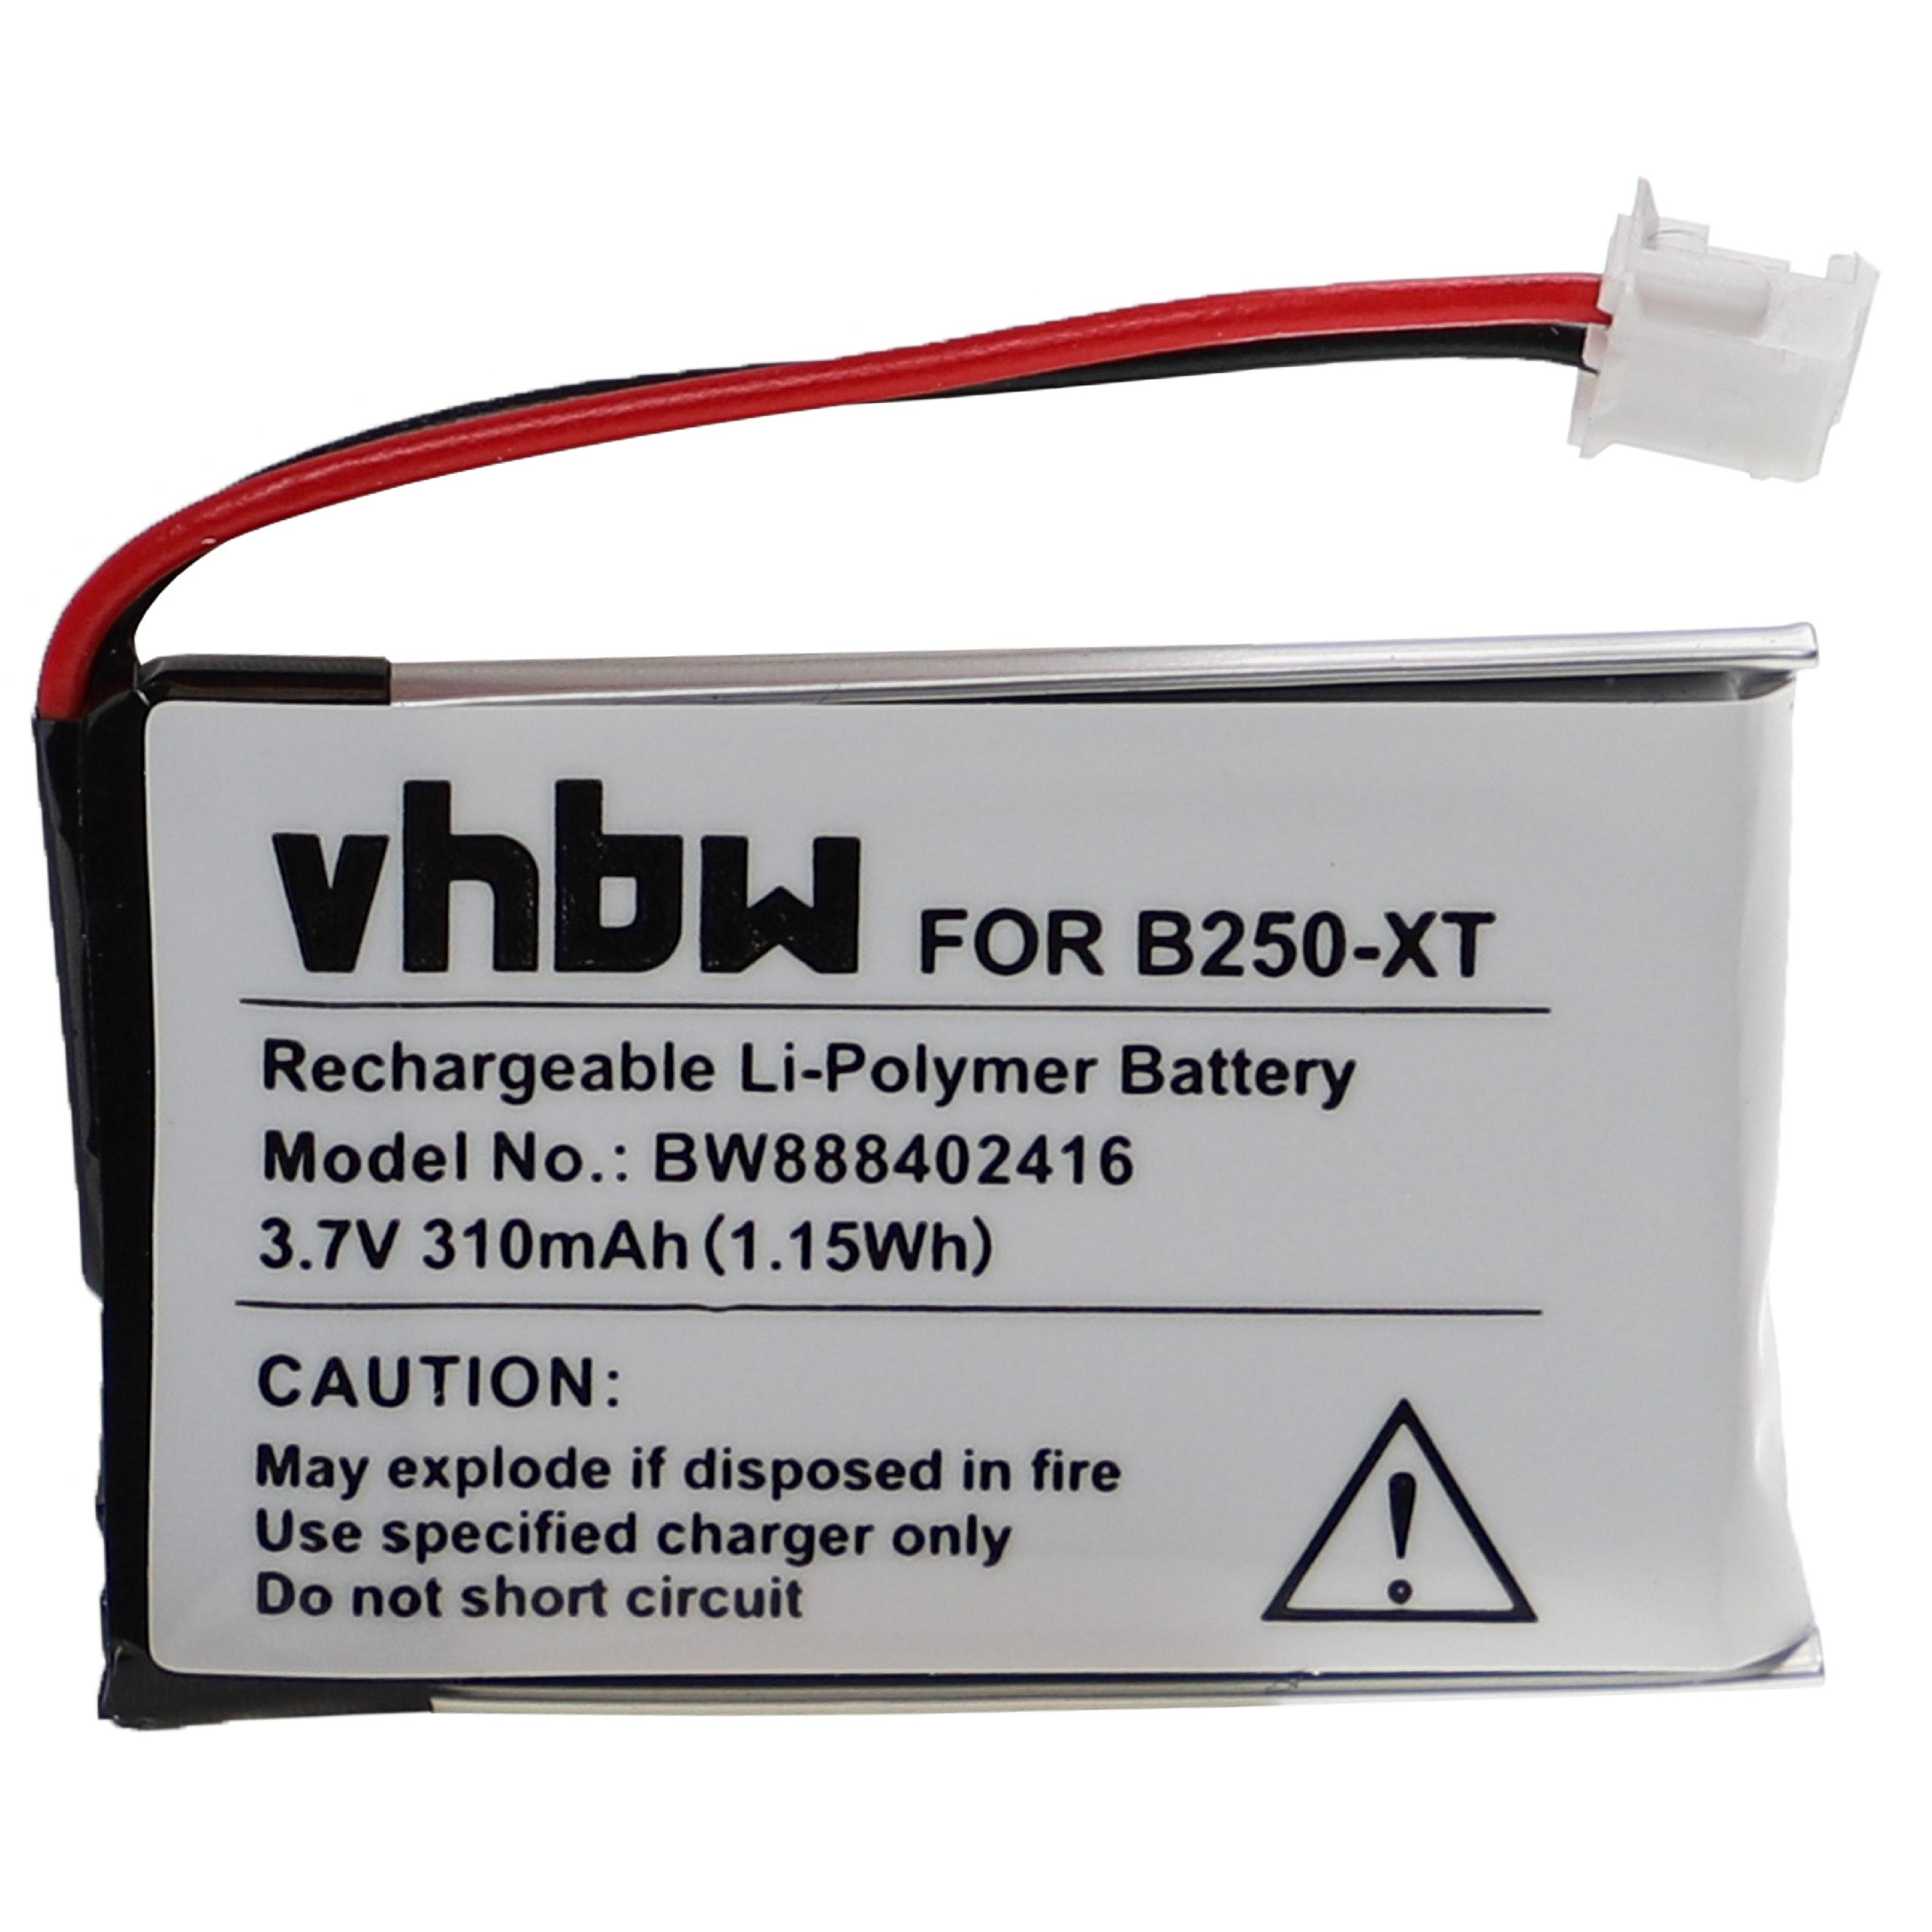 VHBW kompatibel V150, mit V100 Wireless, - V100, BlueParrot Akku B350-XT, B250-XT B250-XT+, Volt, 310 Headset, Vxi Li-Polymer 3.7